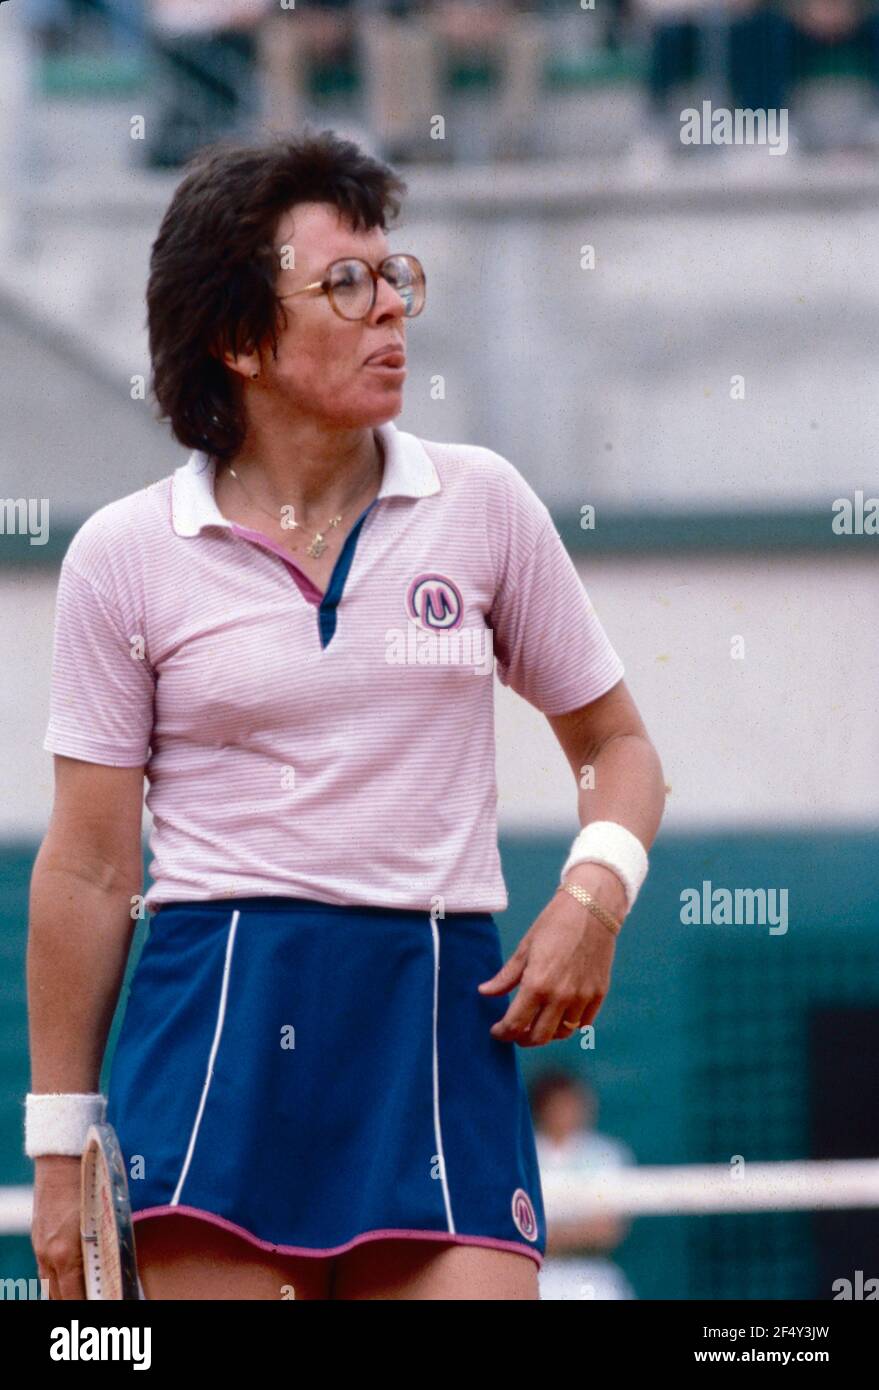 Afhængighed Ikke nok klinke American former tennis player Billie Jean King, 1990s Stock Photo - Alamy